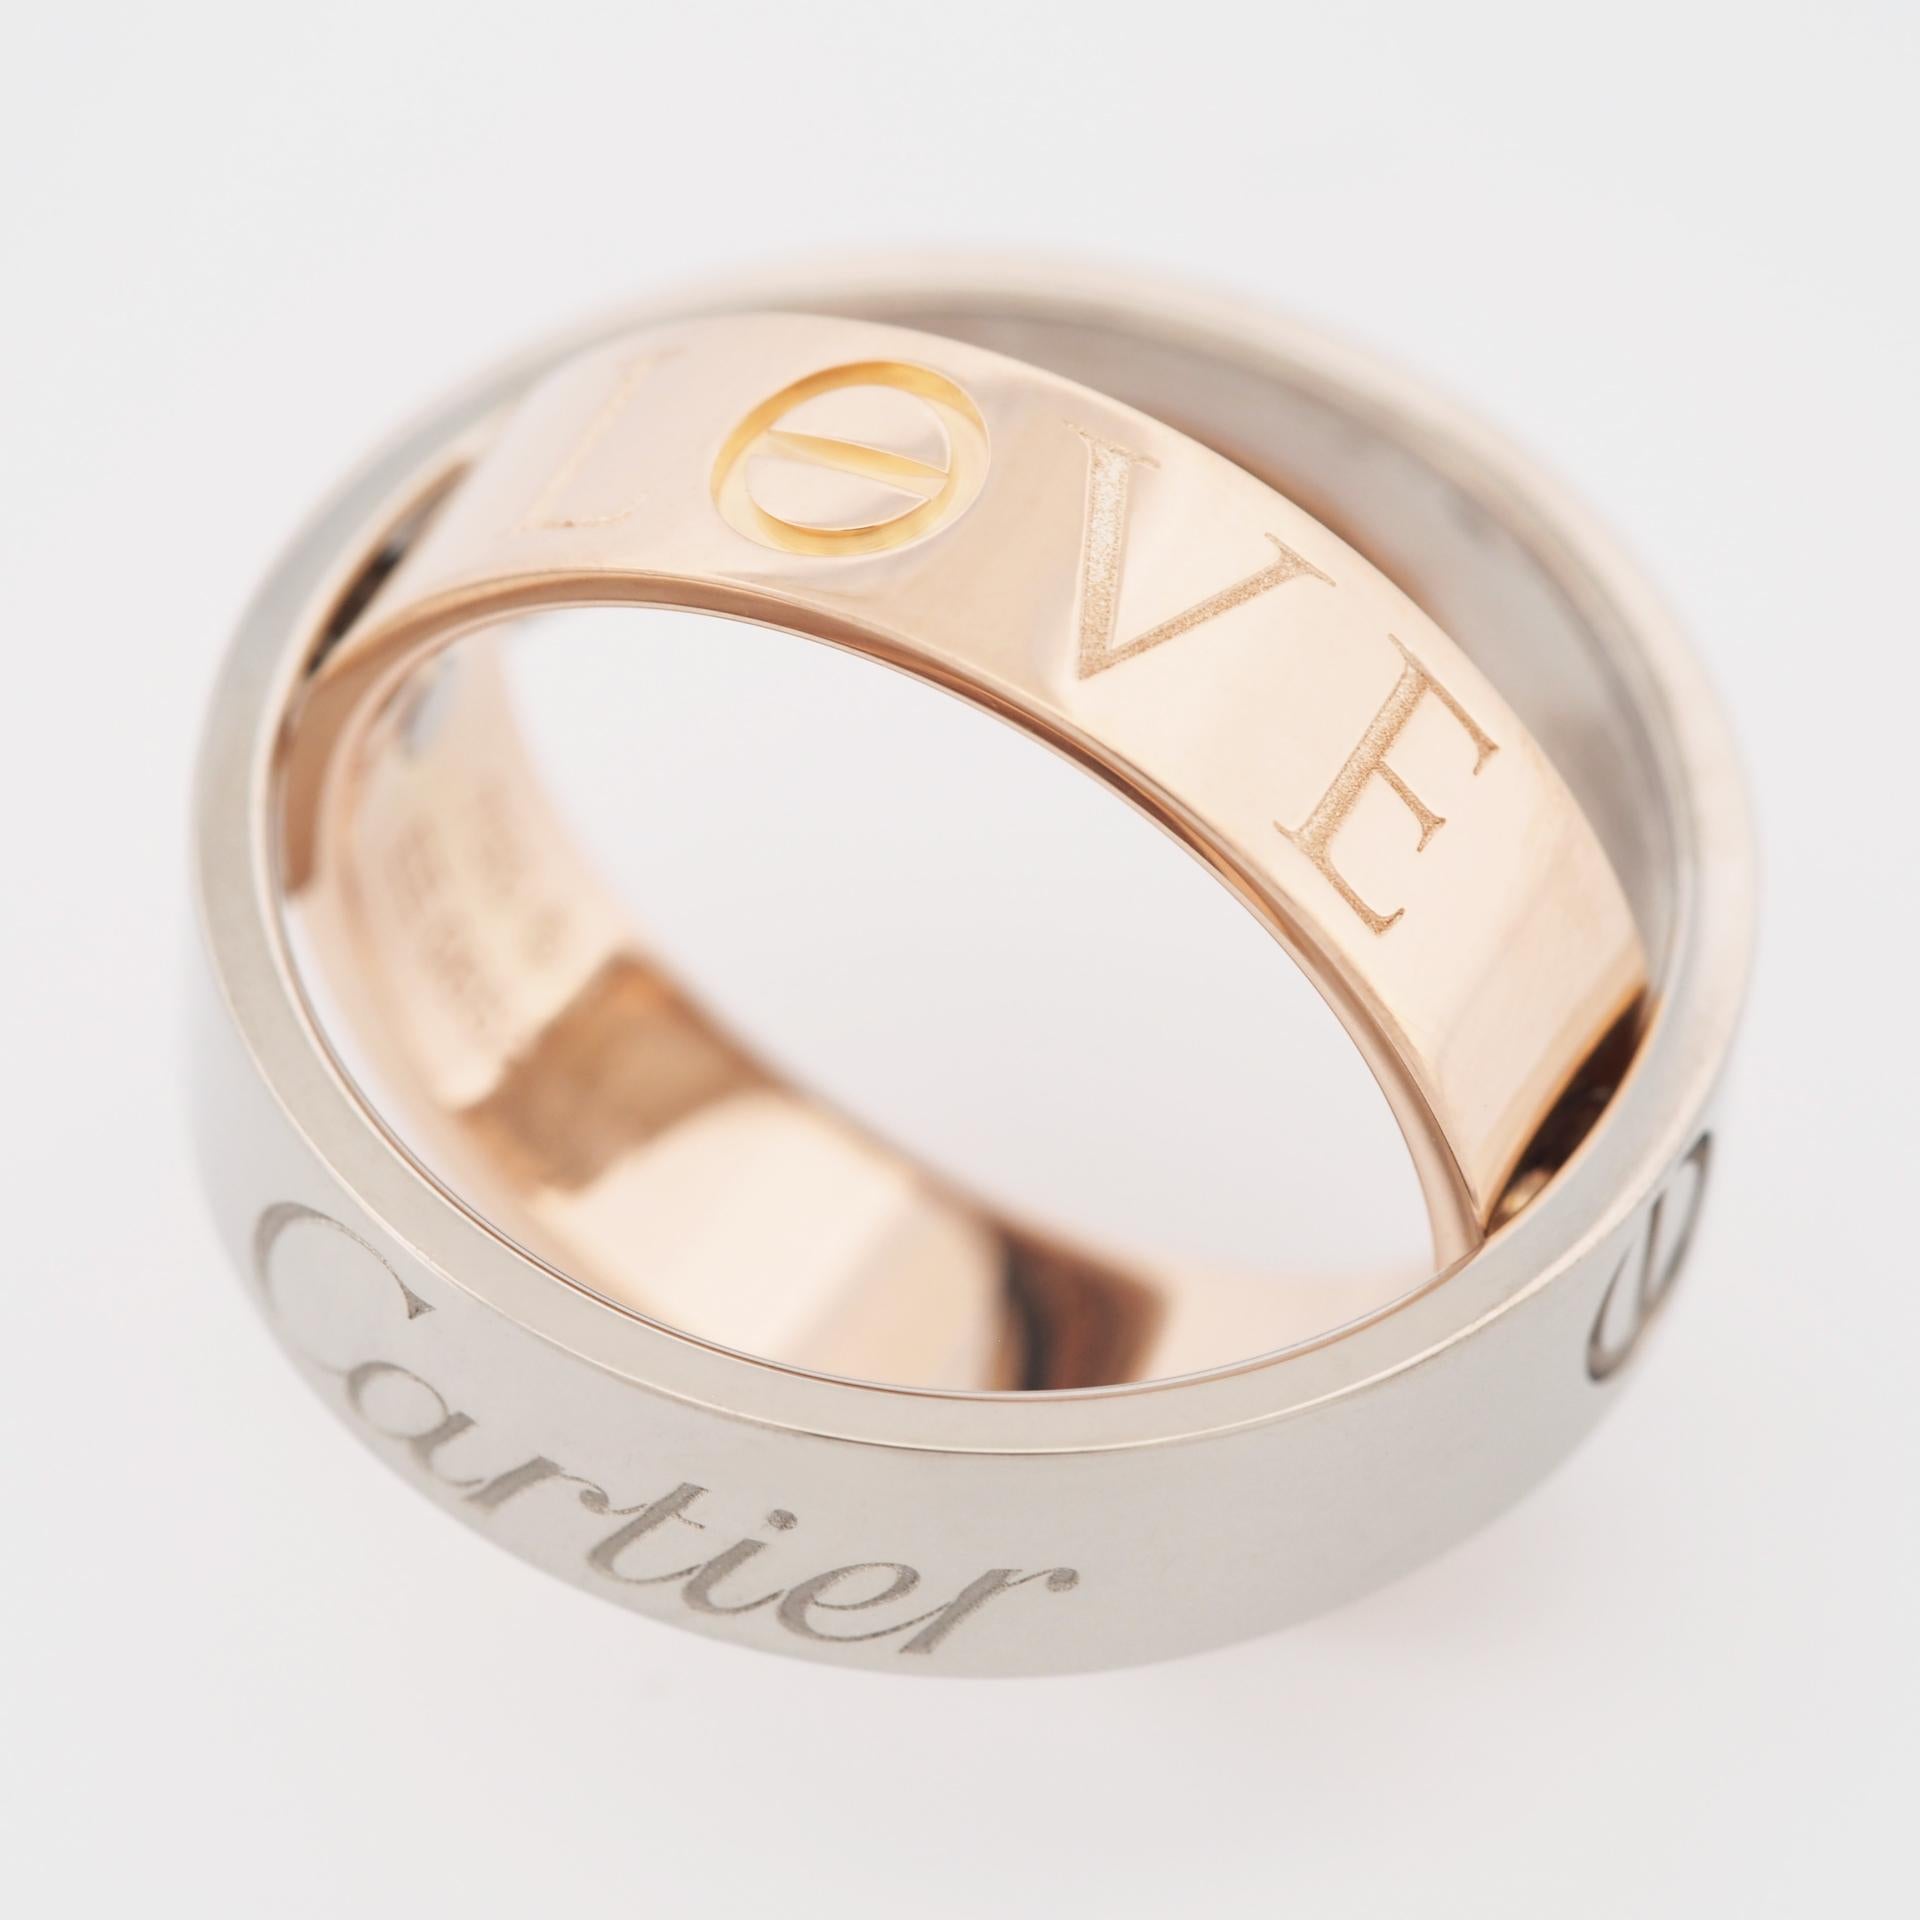  Cartier, bague Love Secret Ring en or rose et blanc 55, 2005, édition limitée Unisexe 